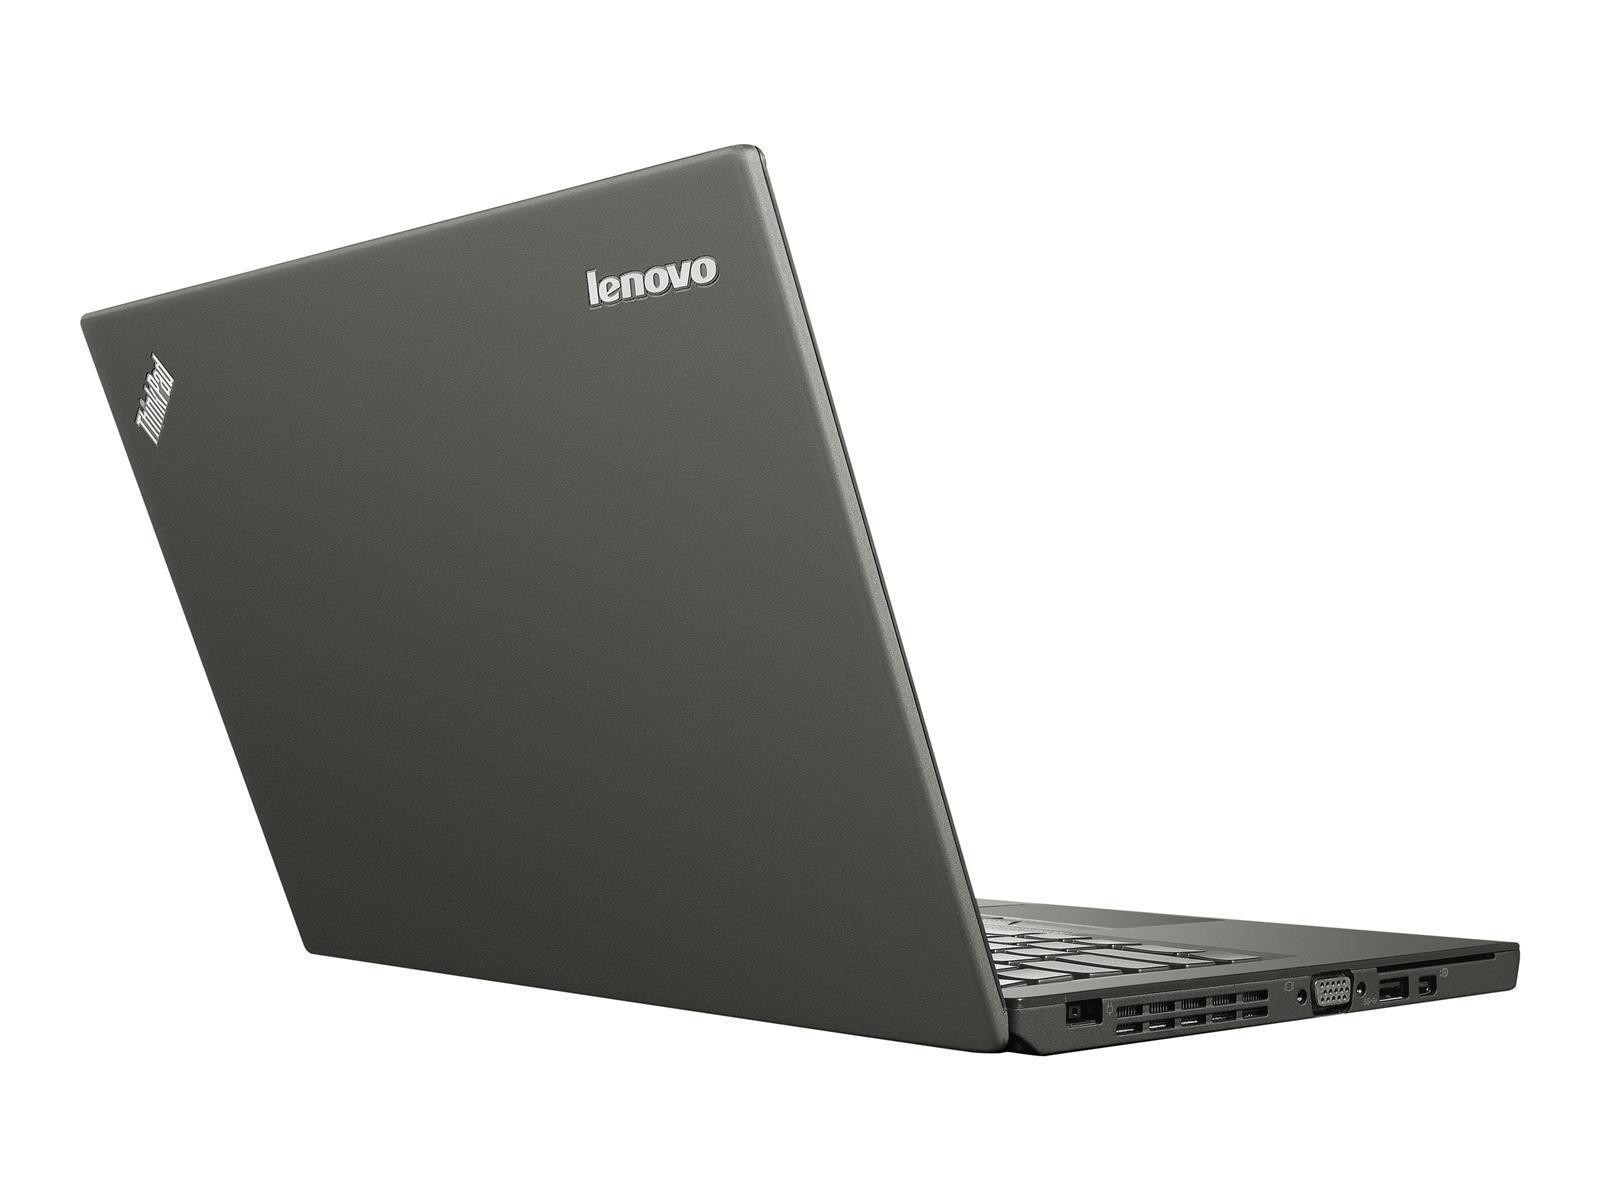 Lenovo ThinkPad X250 Laptop Intel Core i7-5600U 8GB RAM 512GB SSD Full HD W10P